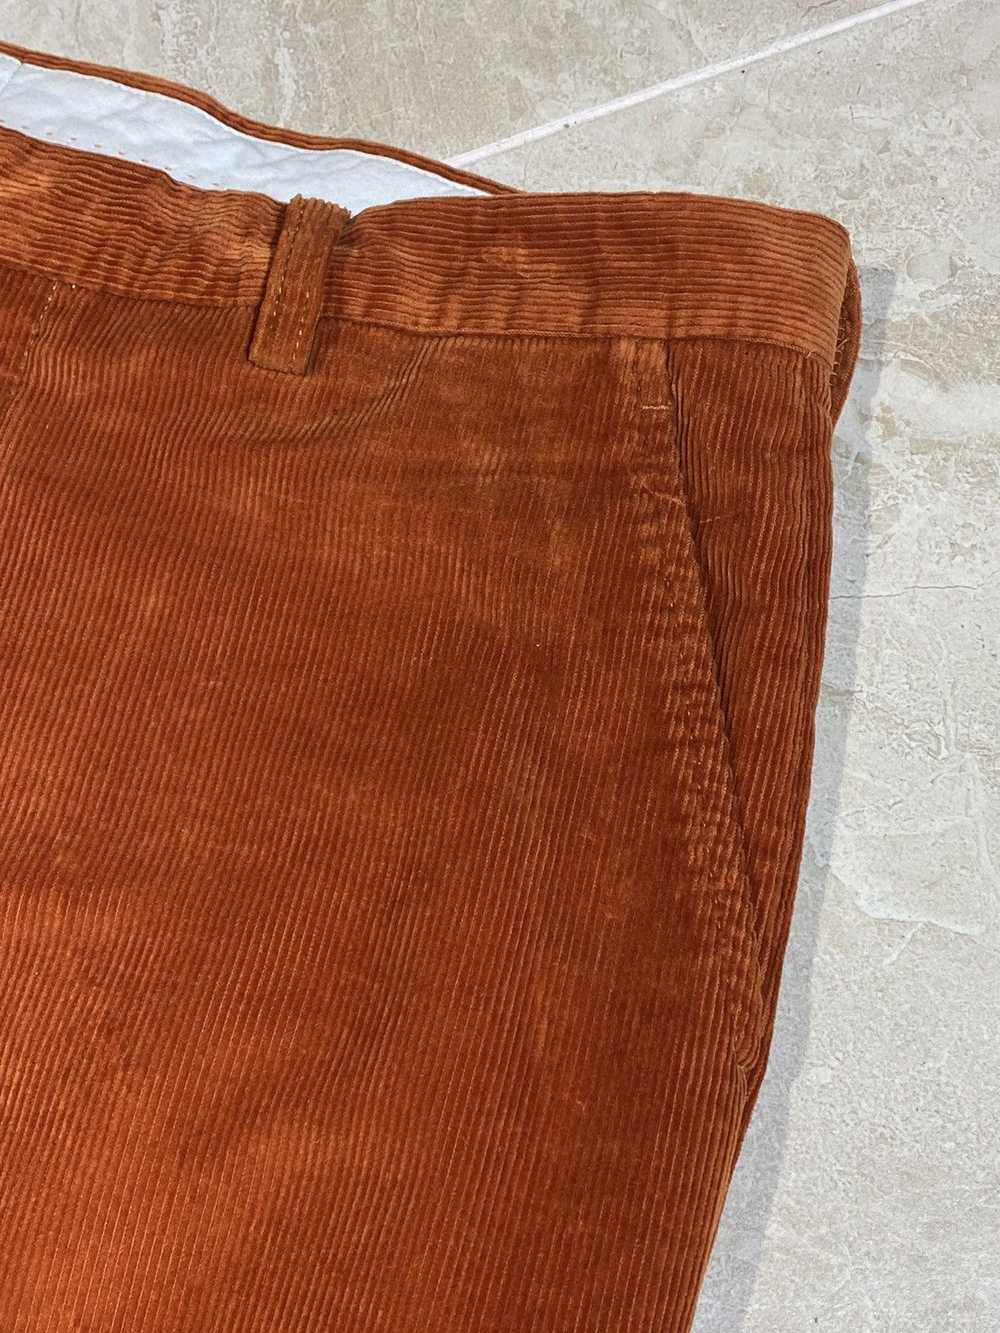 Etro Etro Men’s Cotton Corduroy Pants Orange Size… - image 11